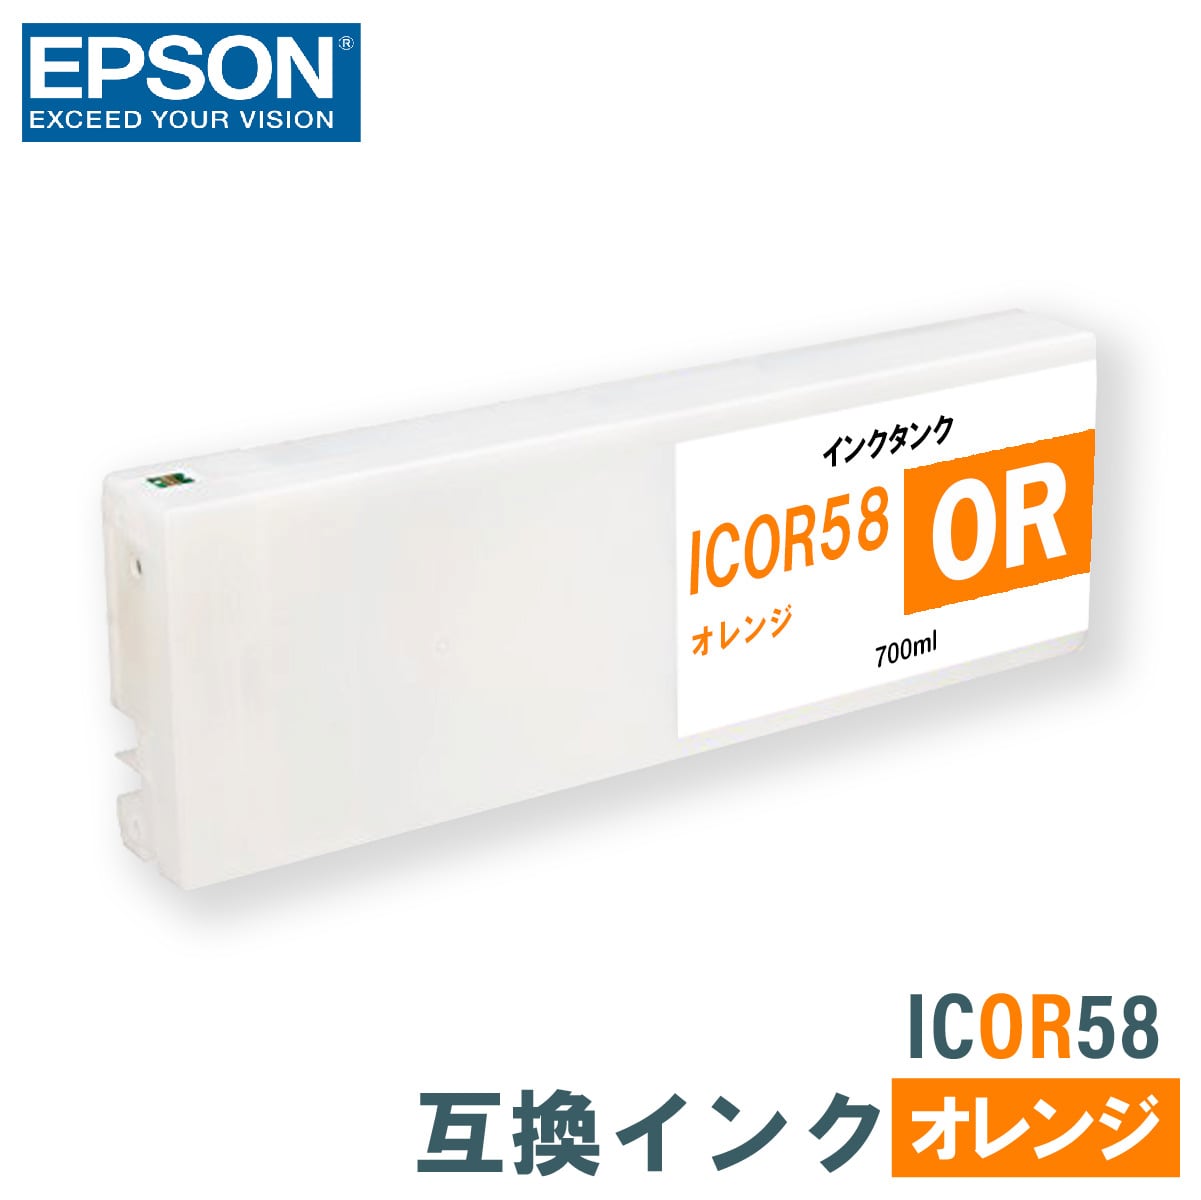 エプソン 互換インク EPSON ICOR58 オレンジ 700ml 互換インク、ロール紙販売のPRINKS(プリンクス)